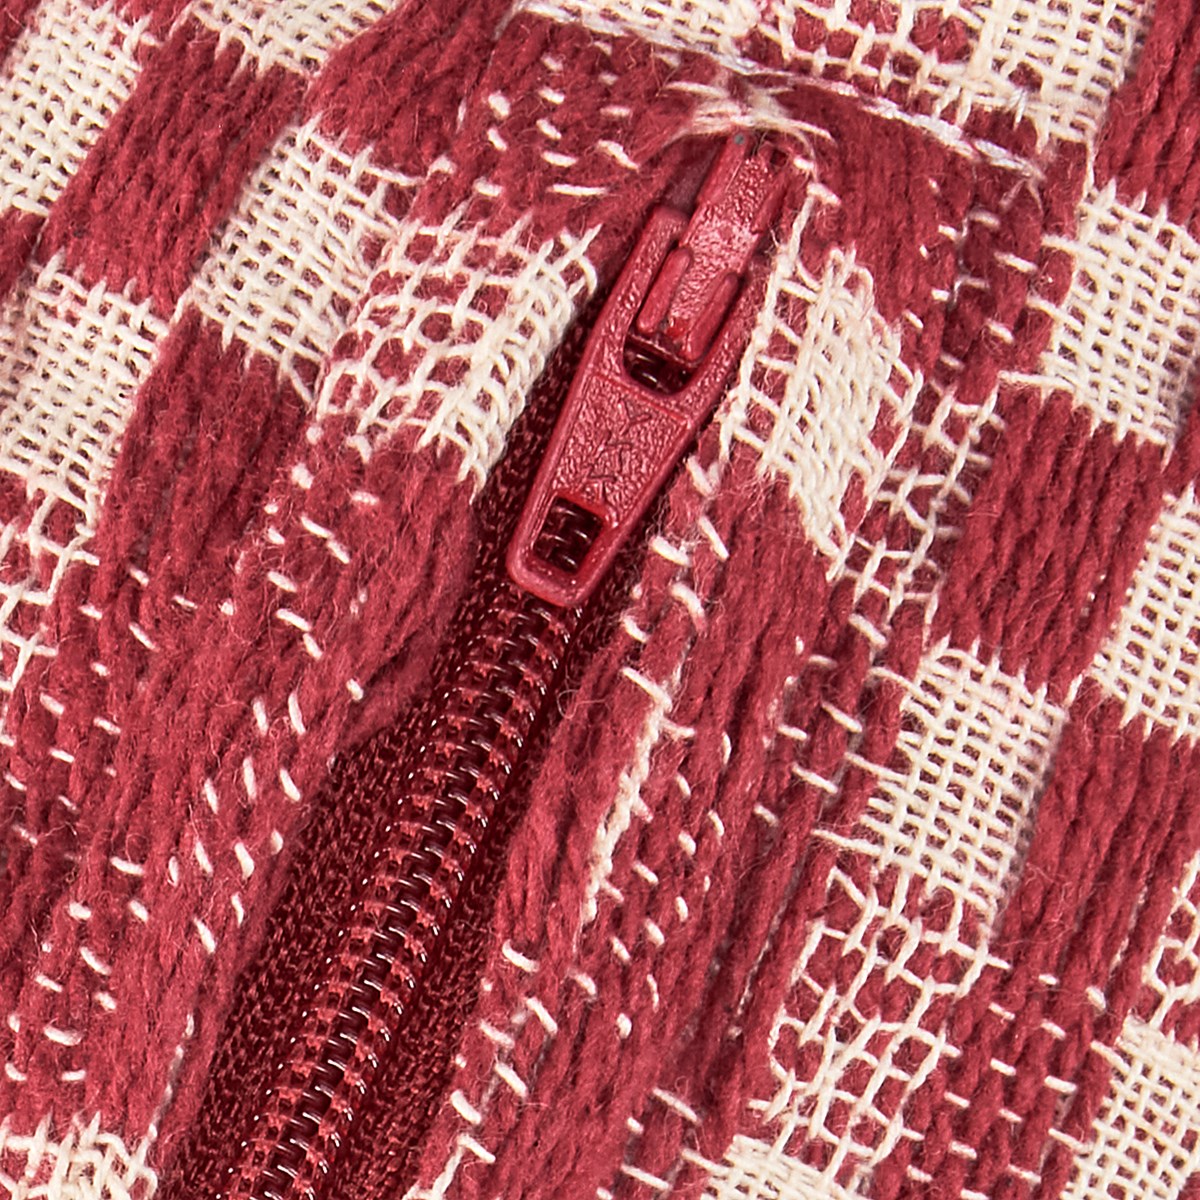 Red Check Pillow - Cotton, Zipper